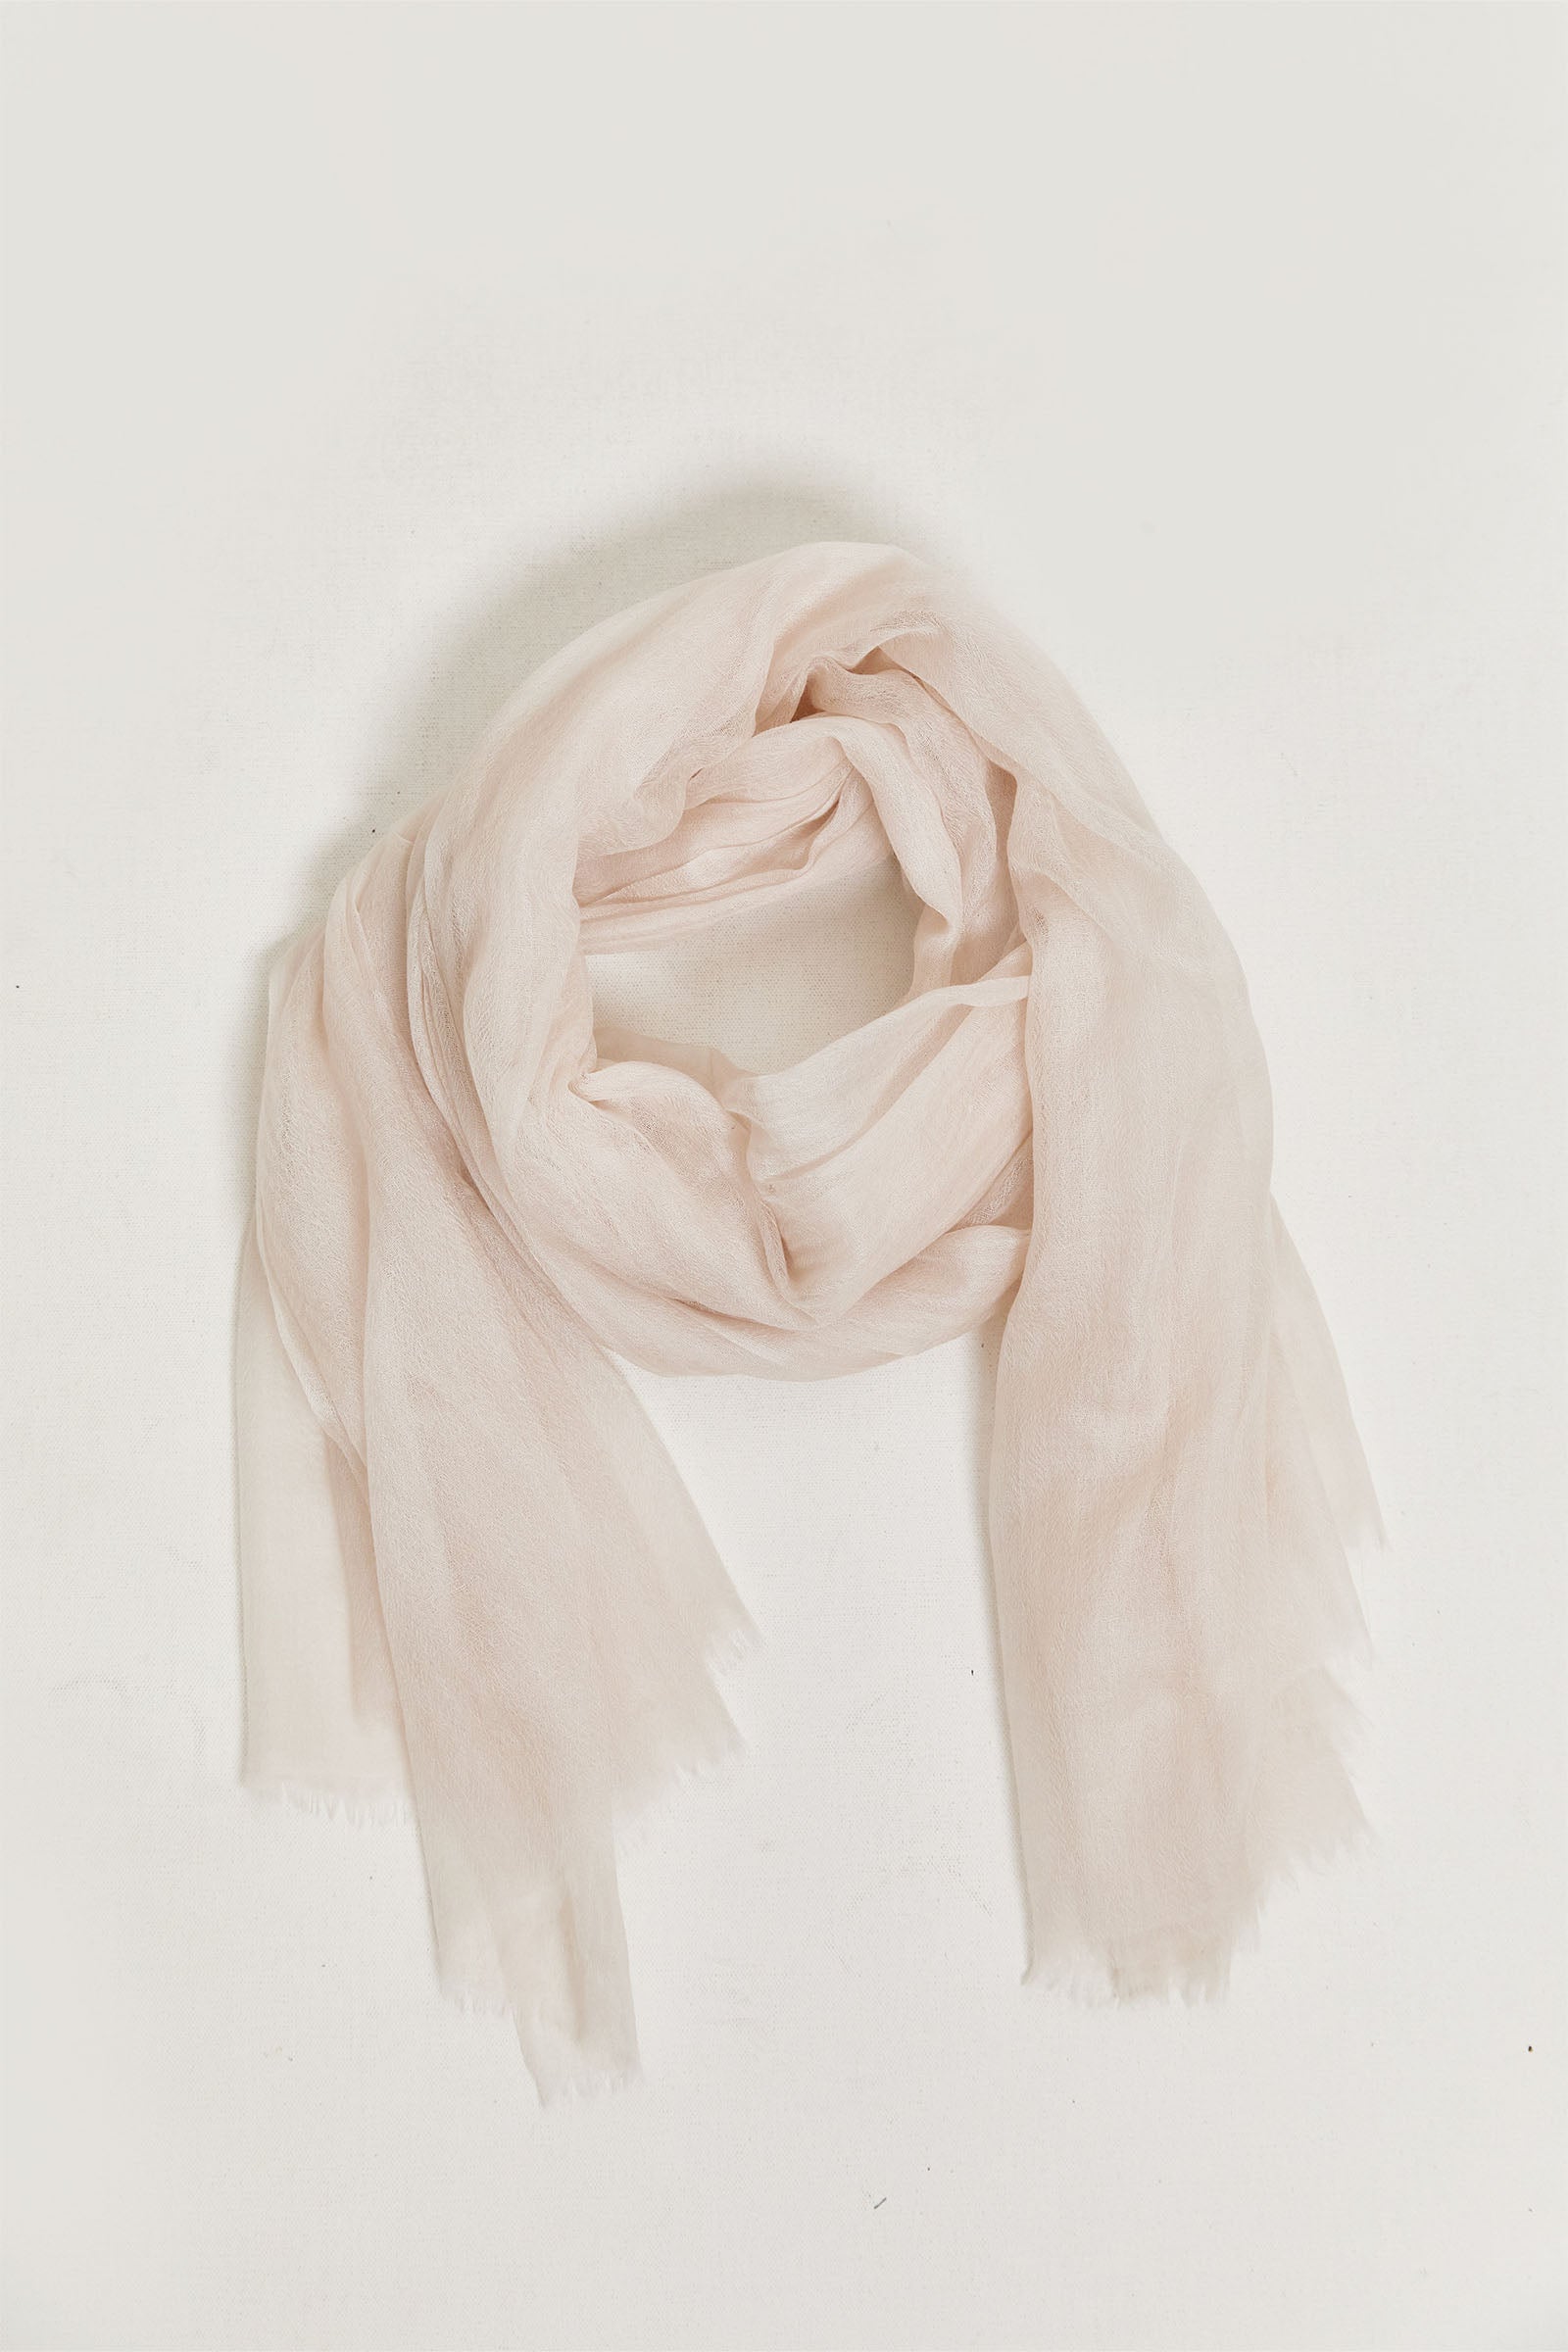 byfreer's lightweight & soft cashmere scarf.